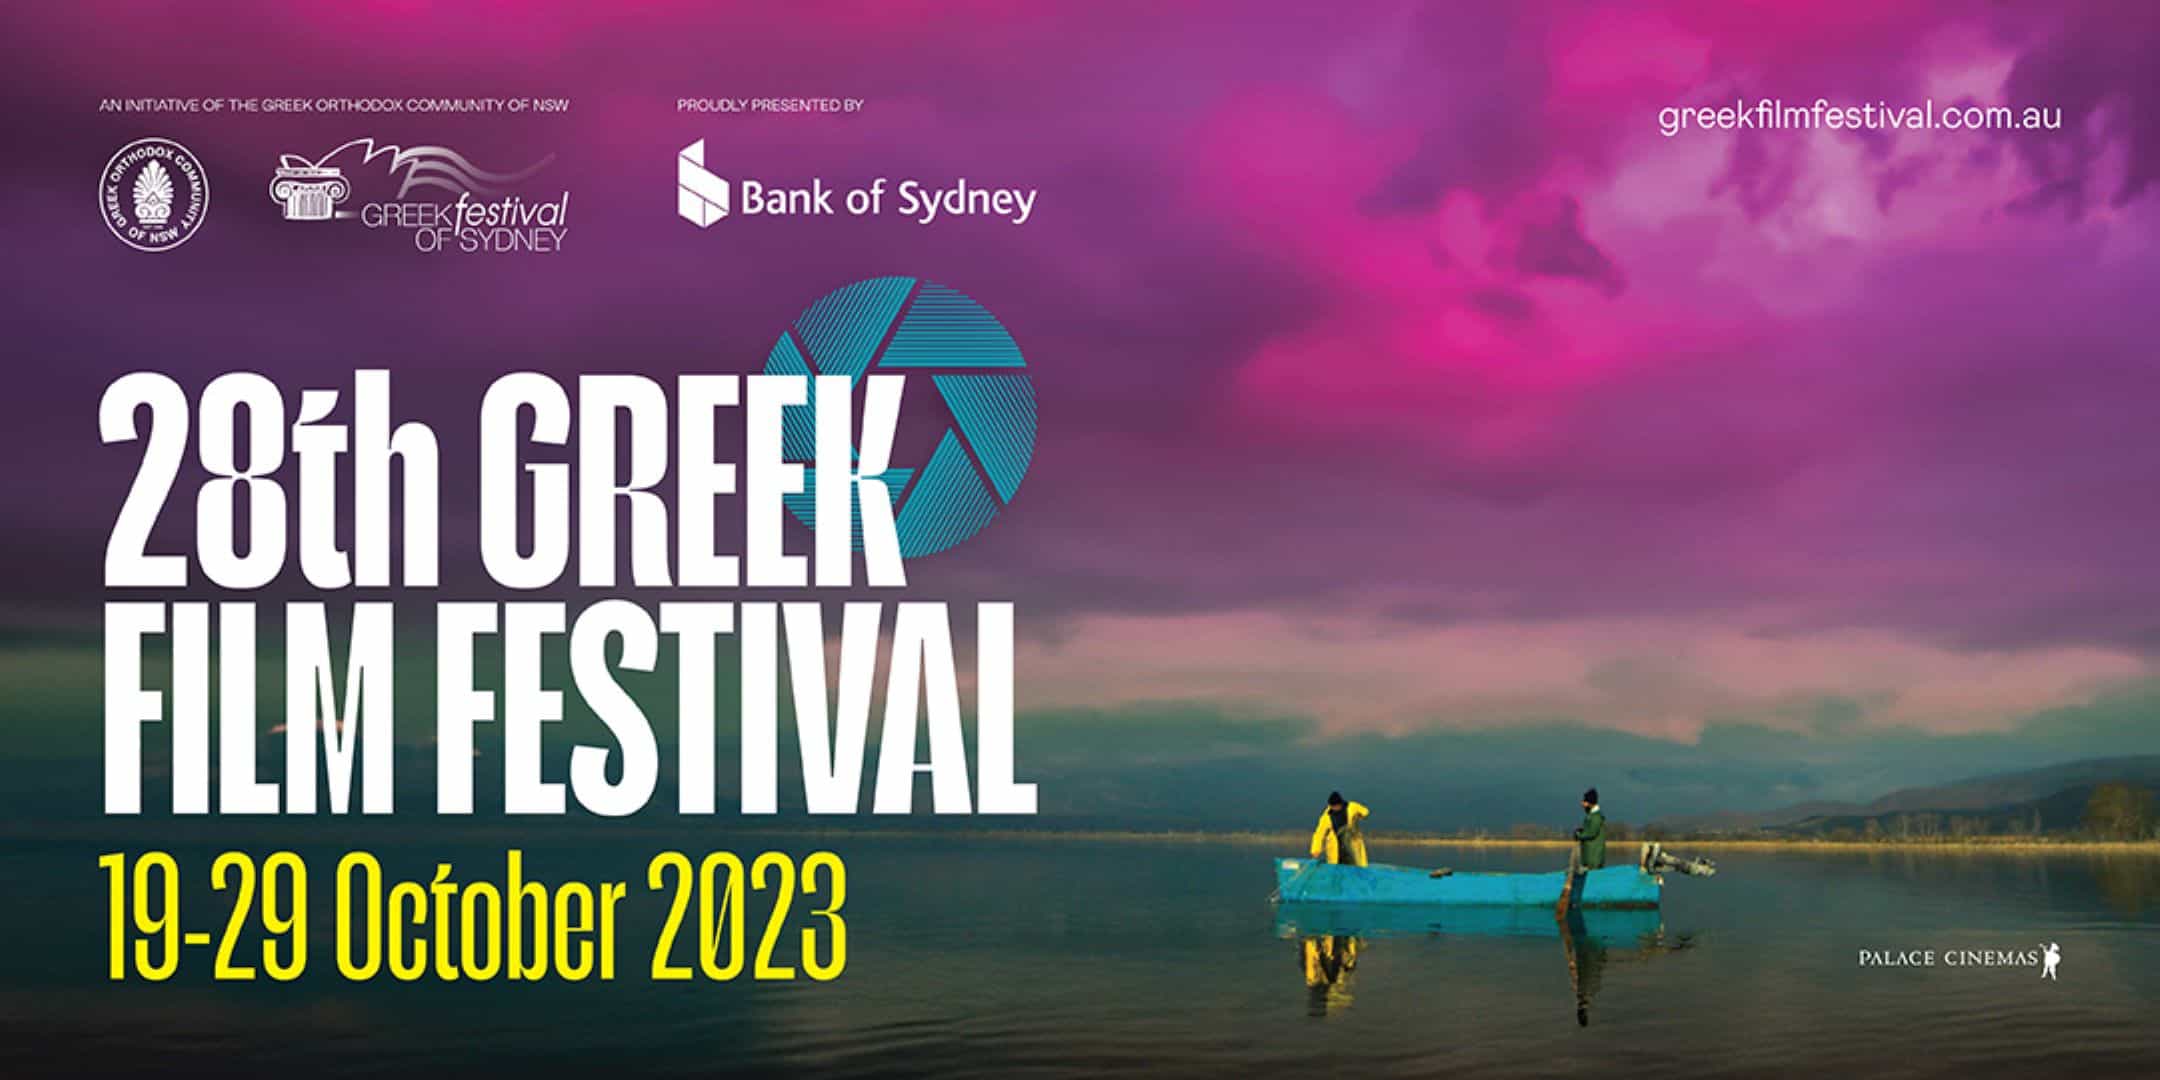 28th greek film festival sydney